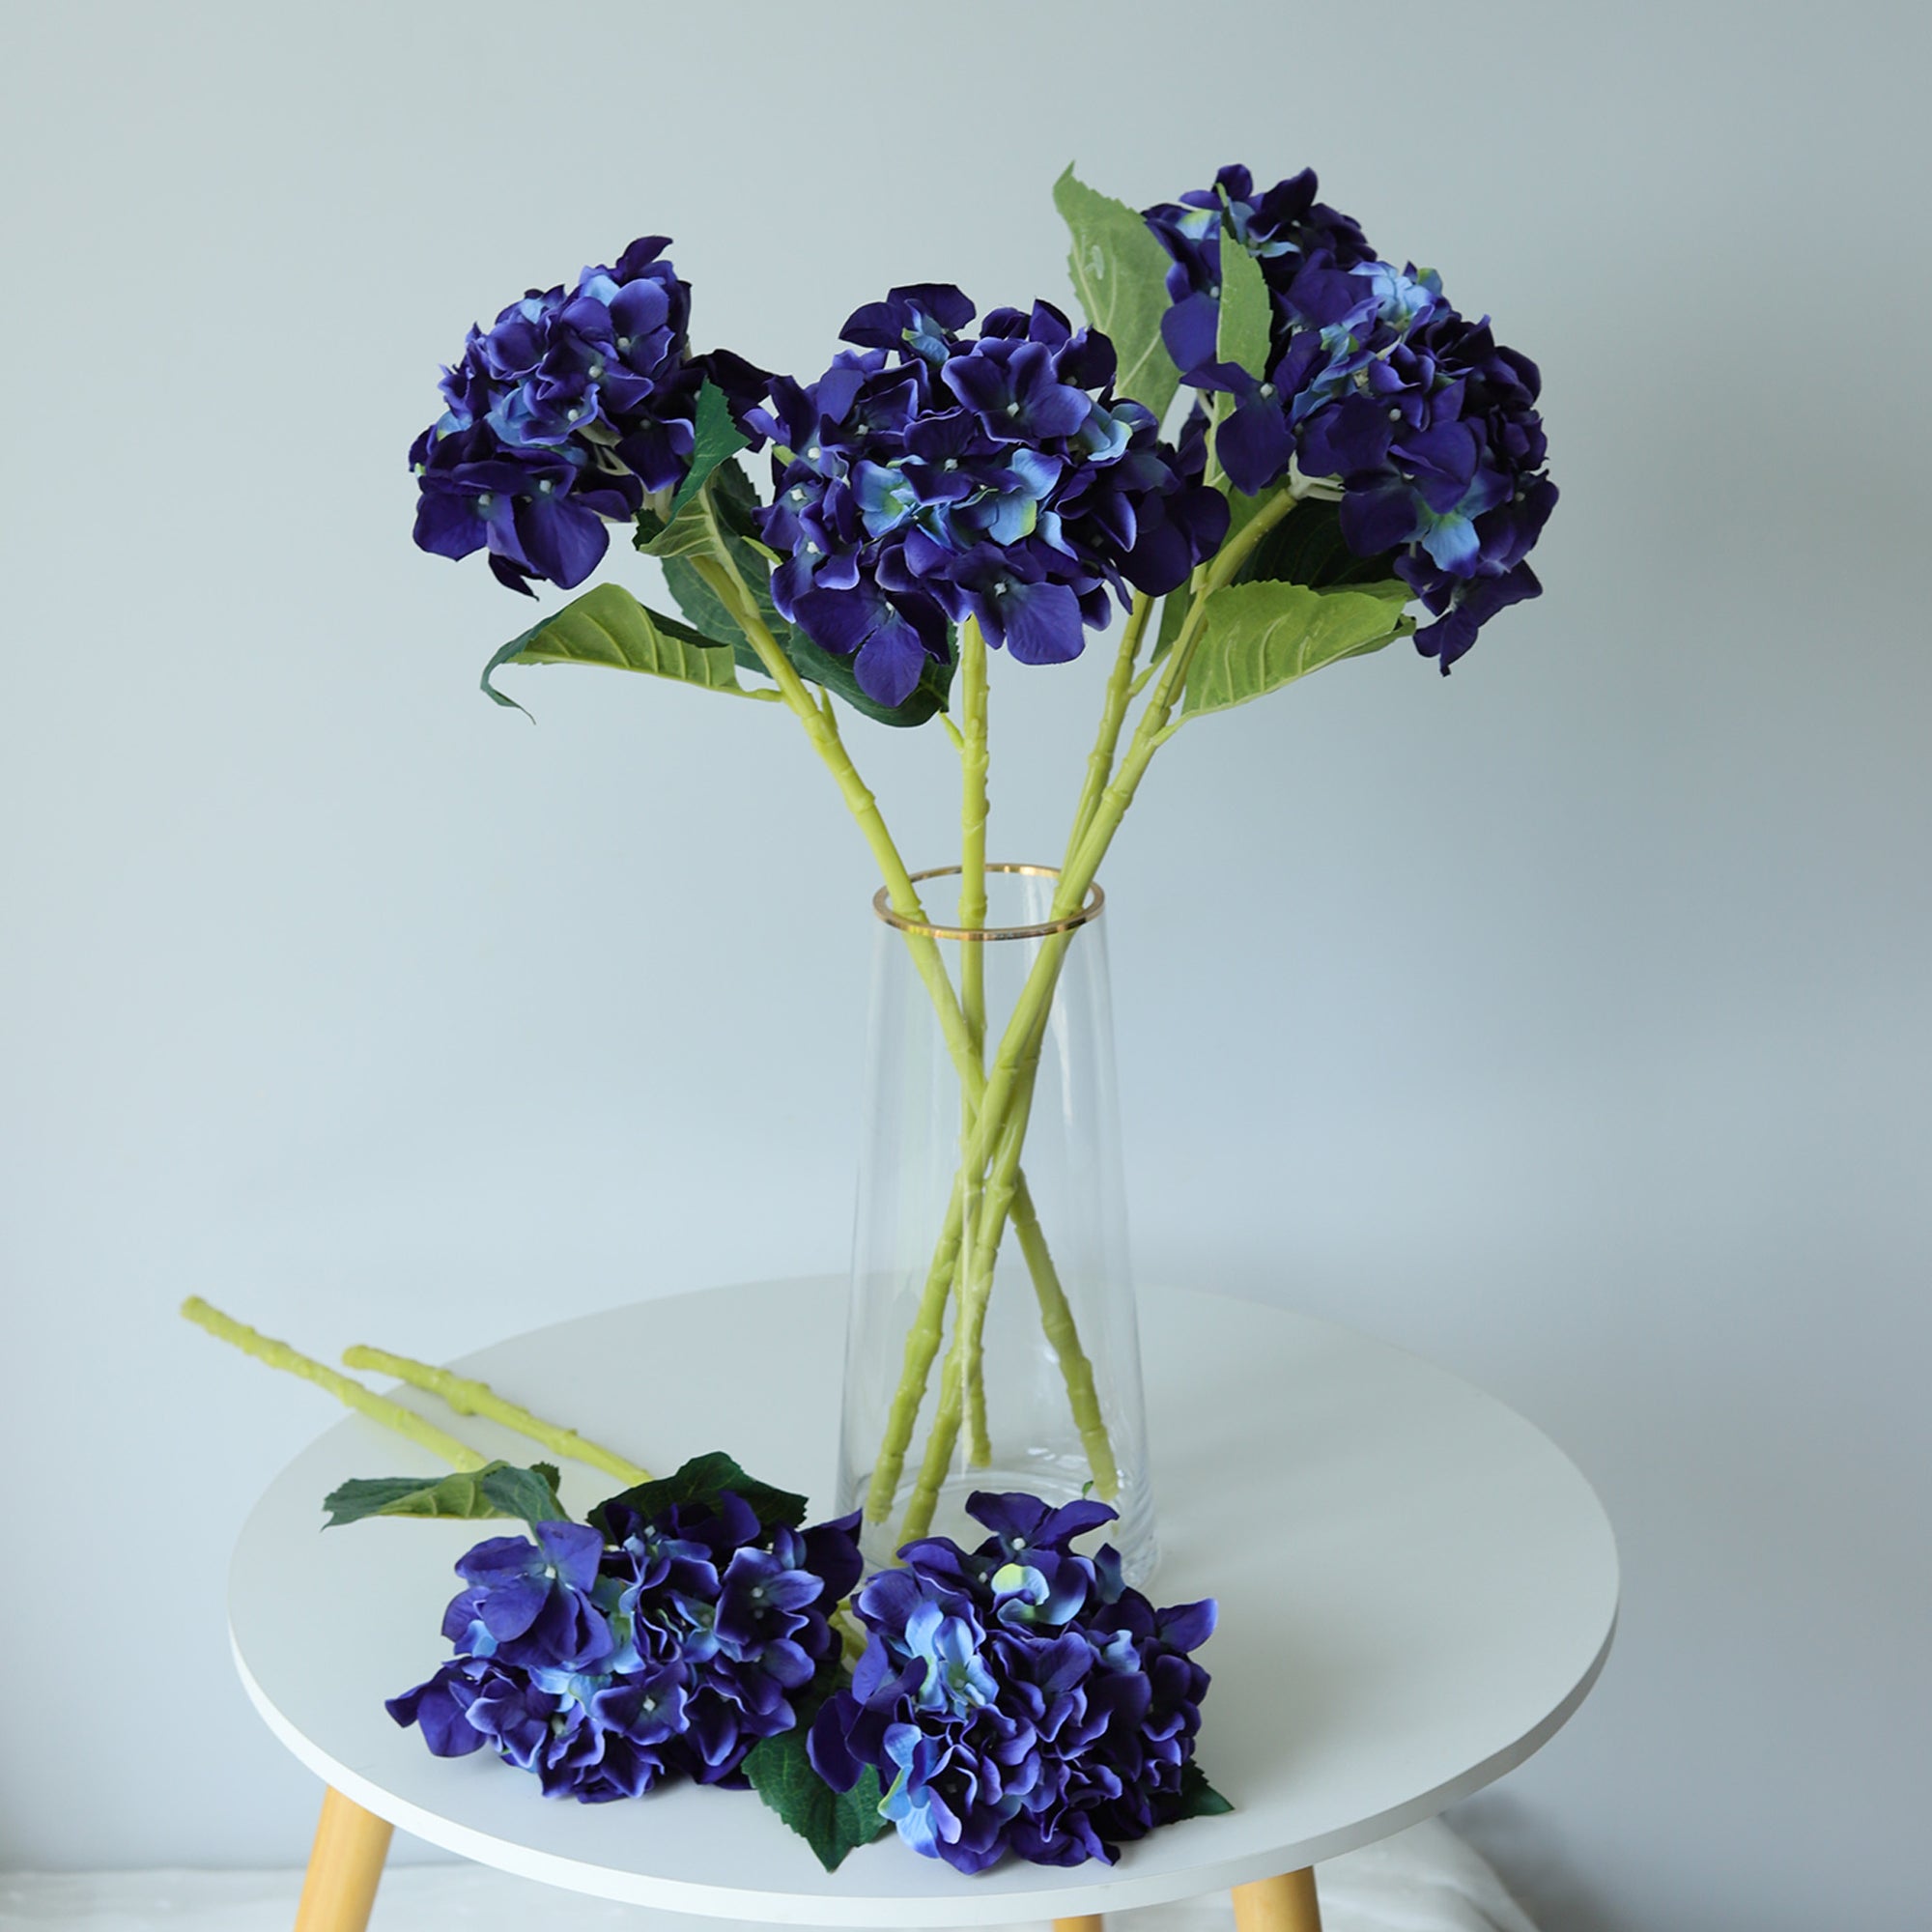 Navy Blue Hydrangea Fake Flower Wedding Centerpieces